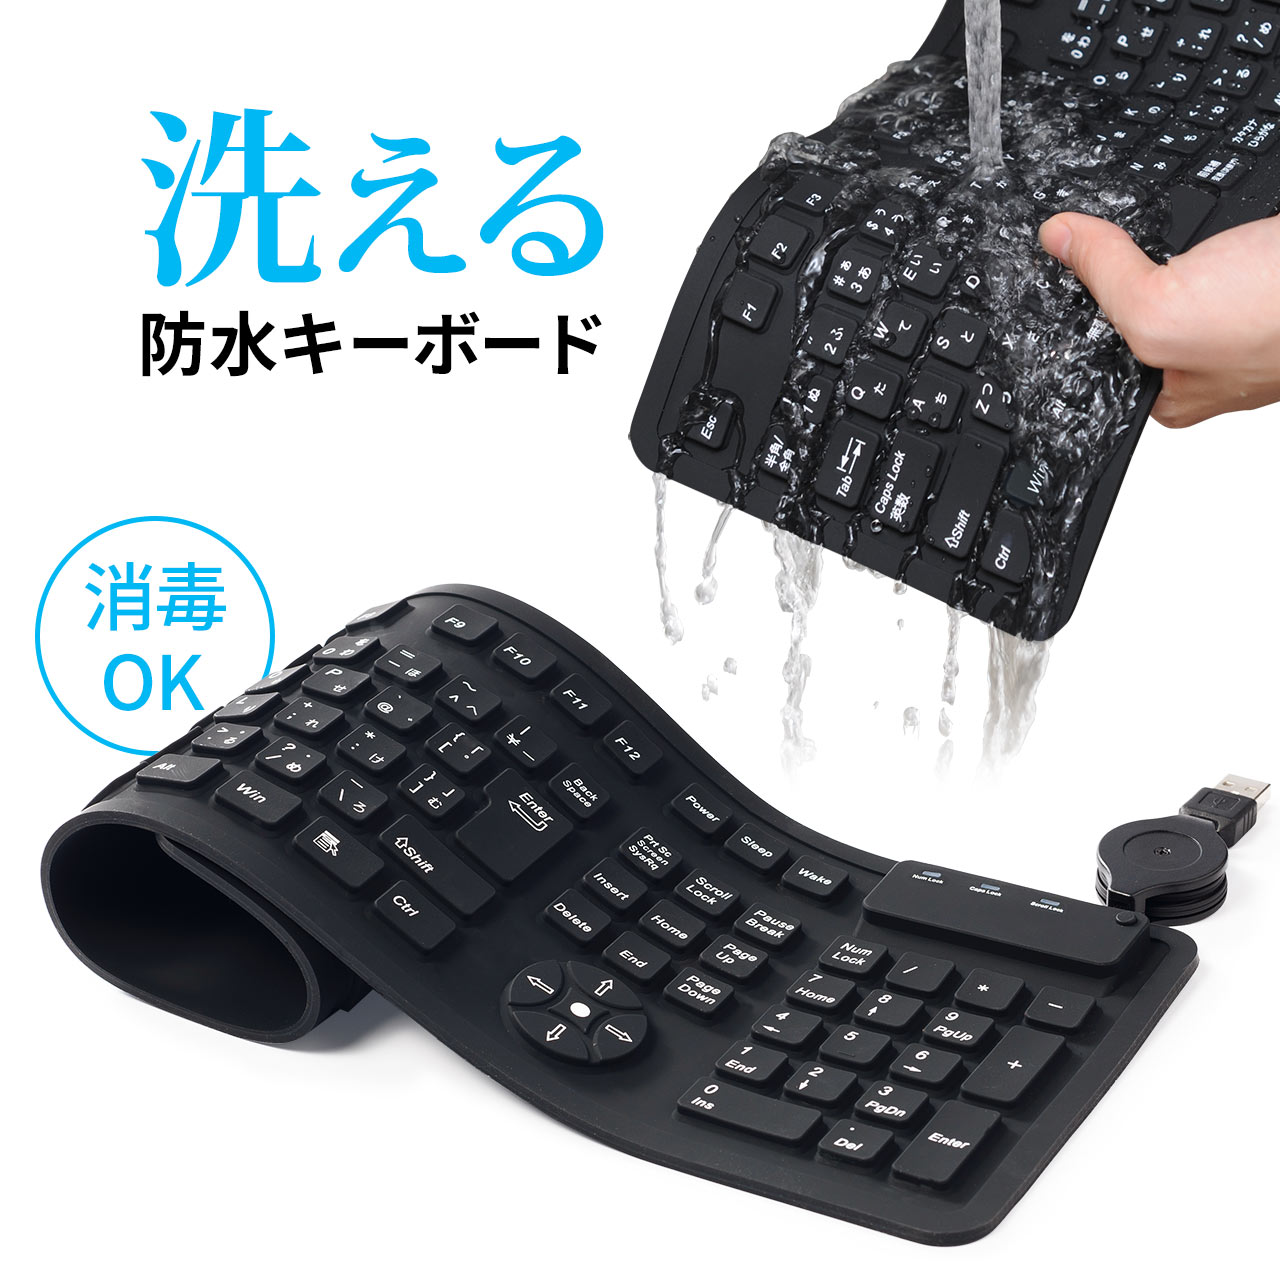 400-SKB013 日本未発売 サンワダイレクト限定品 テレビで紹介されました 巻けるシリコンキーボード 全国一律送料無料 丸めて収納可能できるシリコン製 水洗いOK USB接続 防水